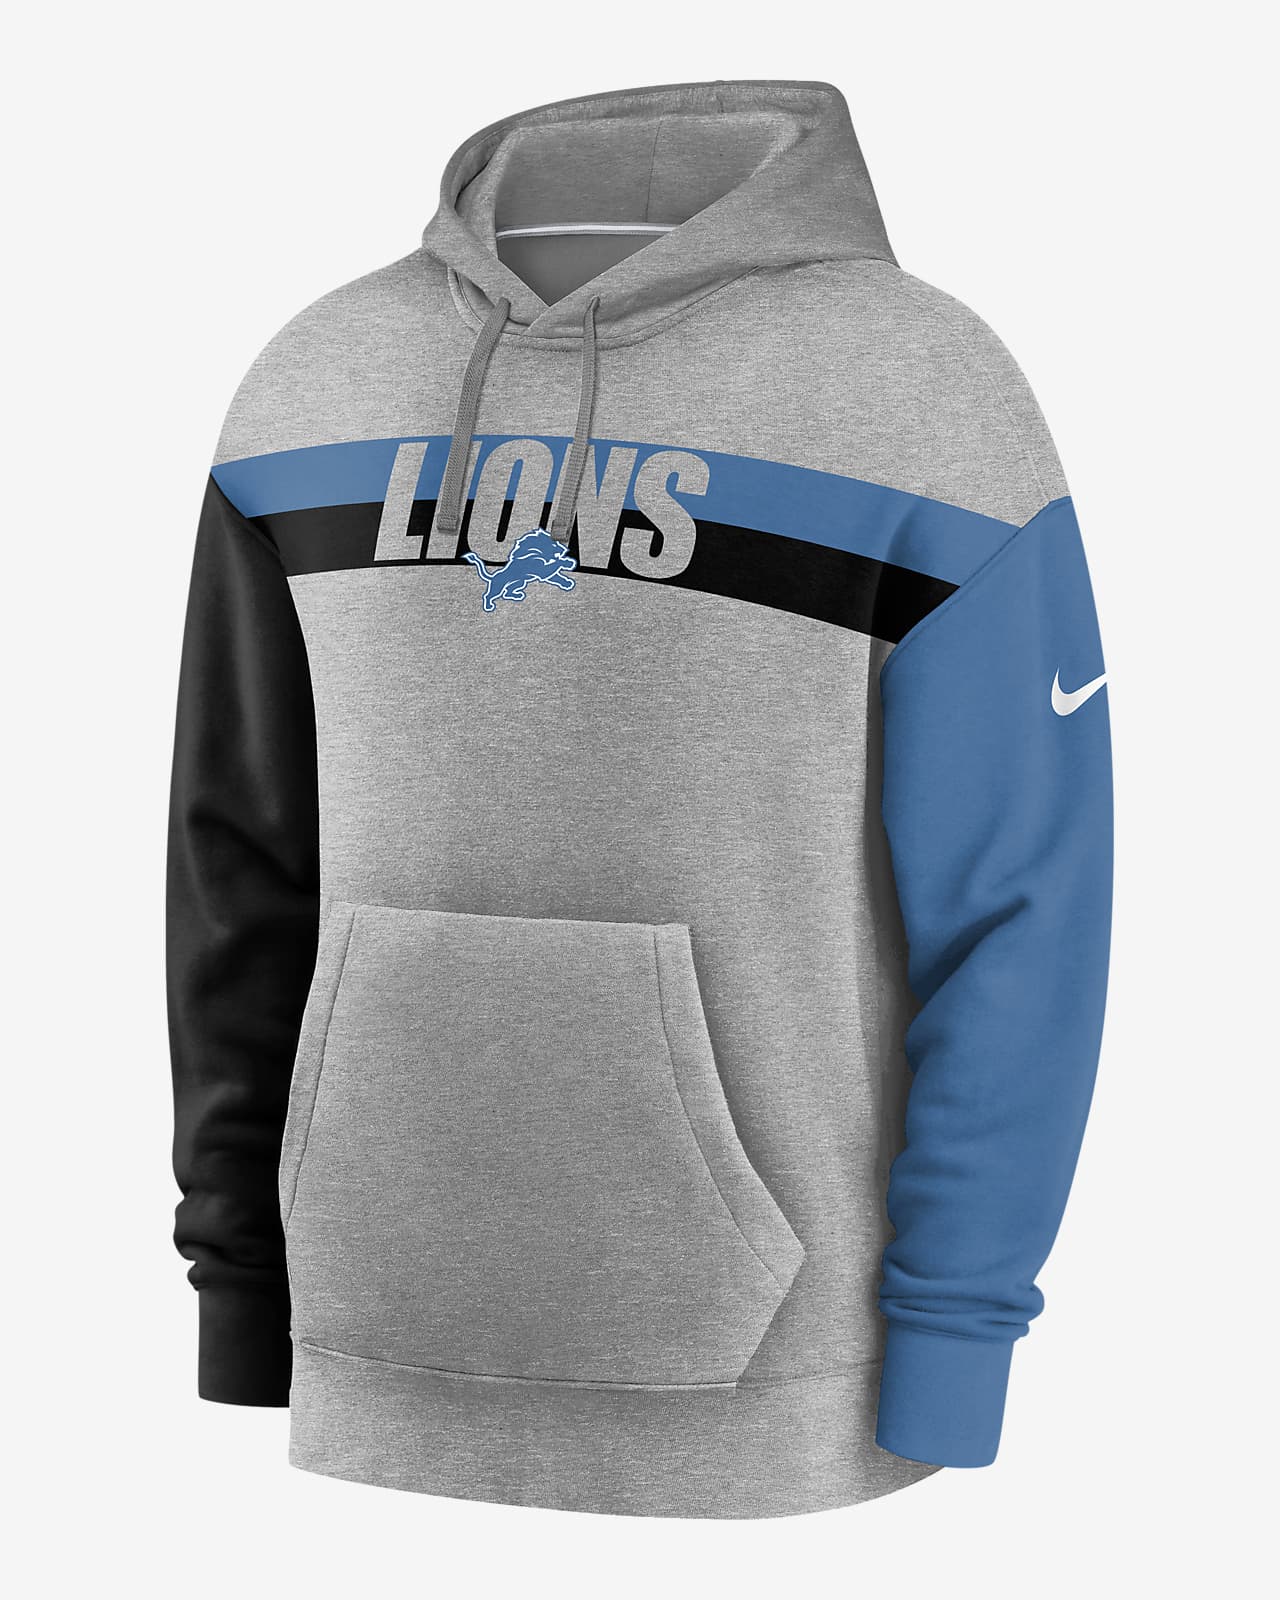 nfl lions hoodie